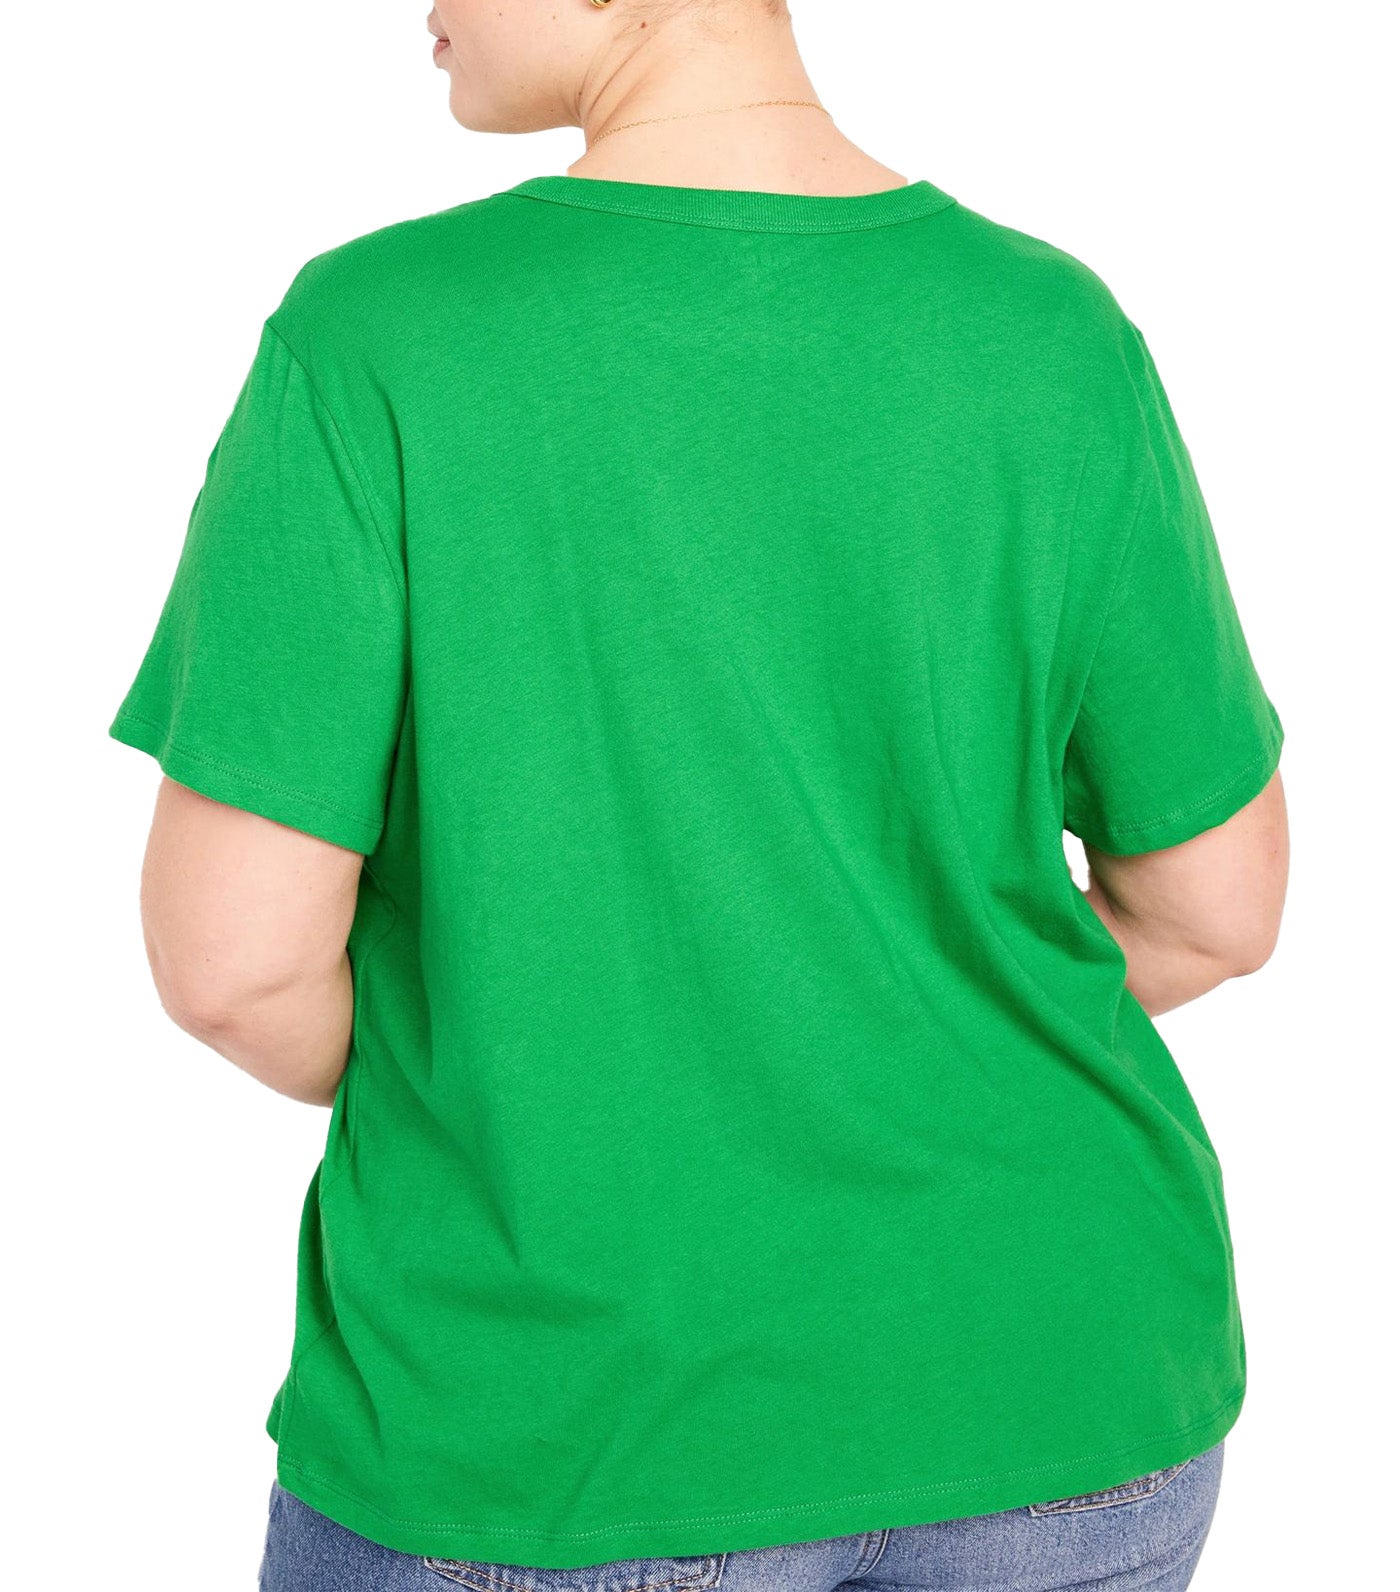 EveryWear T-Shirt for Women Beach Cruiser Green